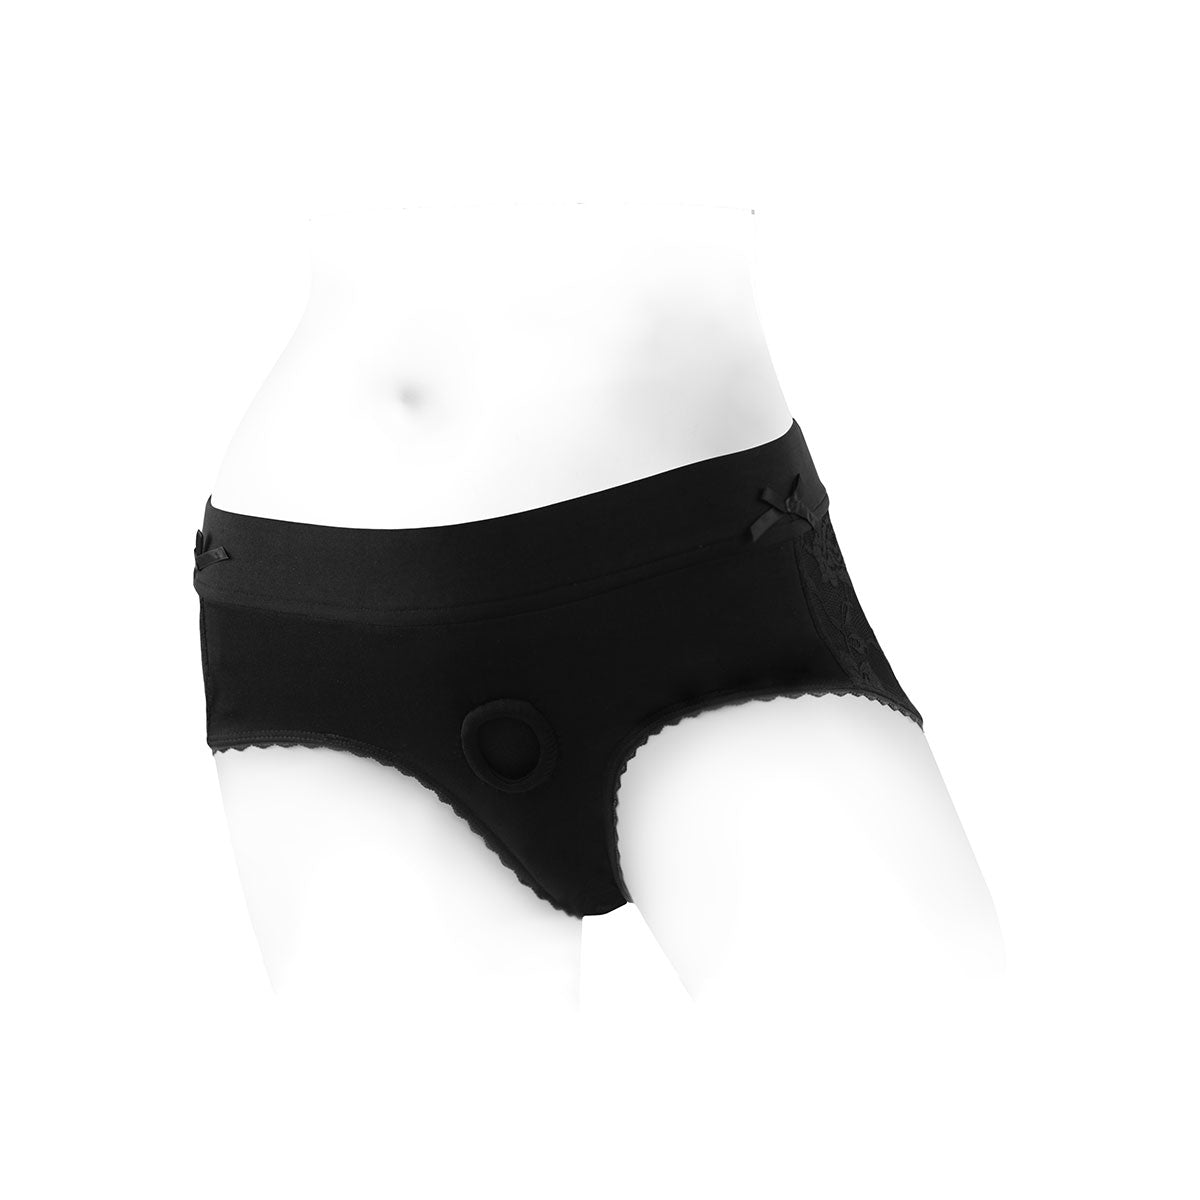 Sportsheets Silhouette Strapon Underwear Harness